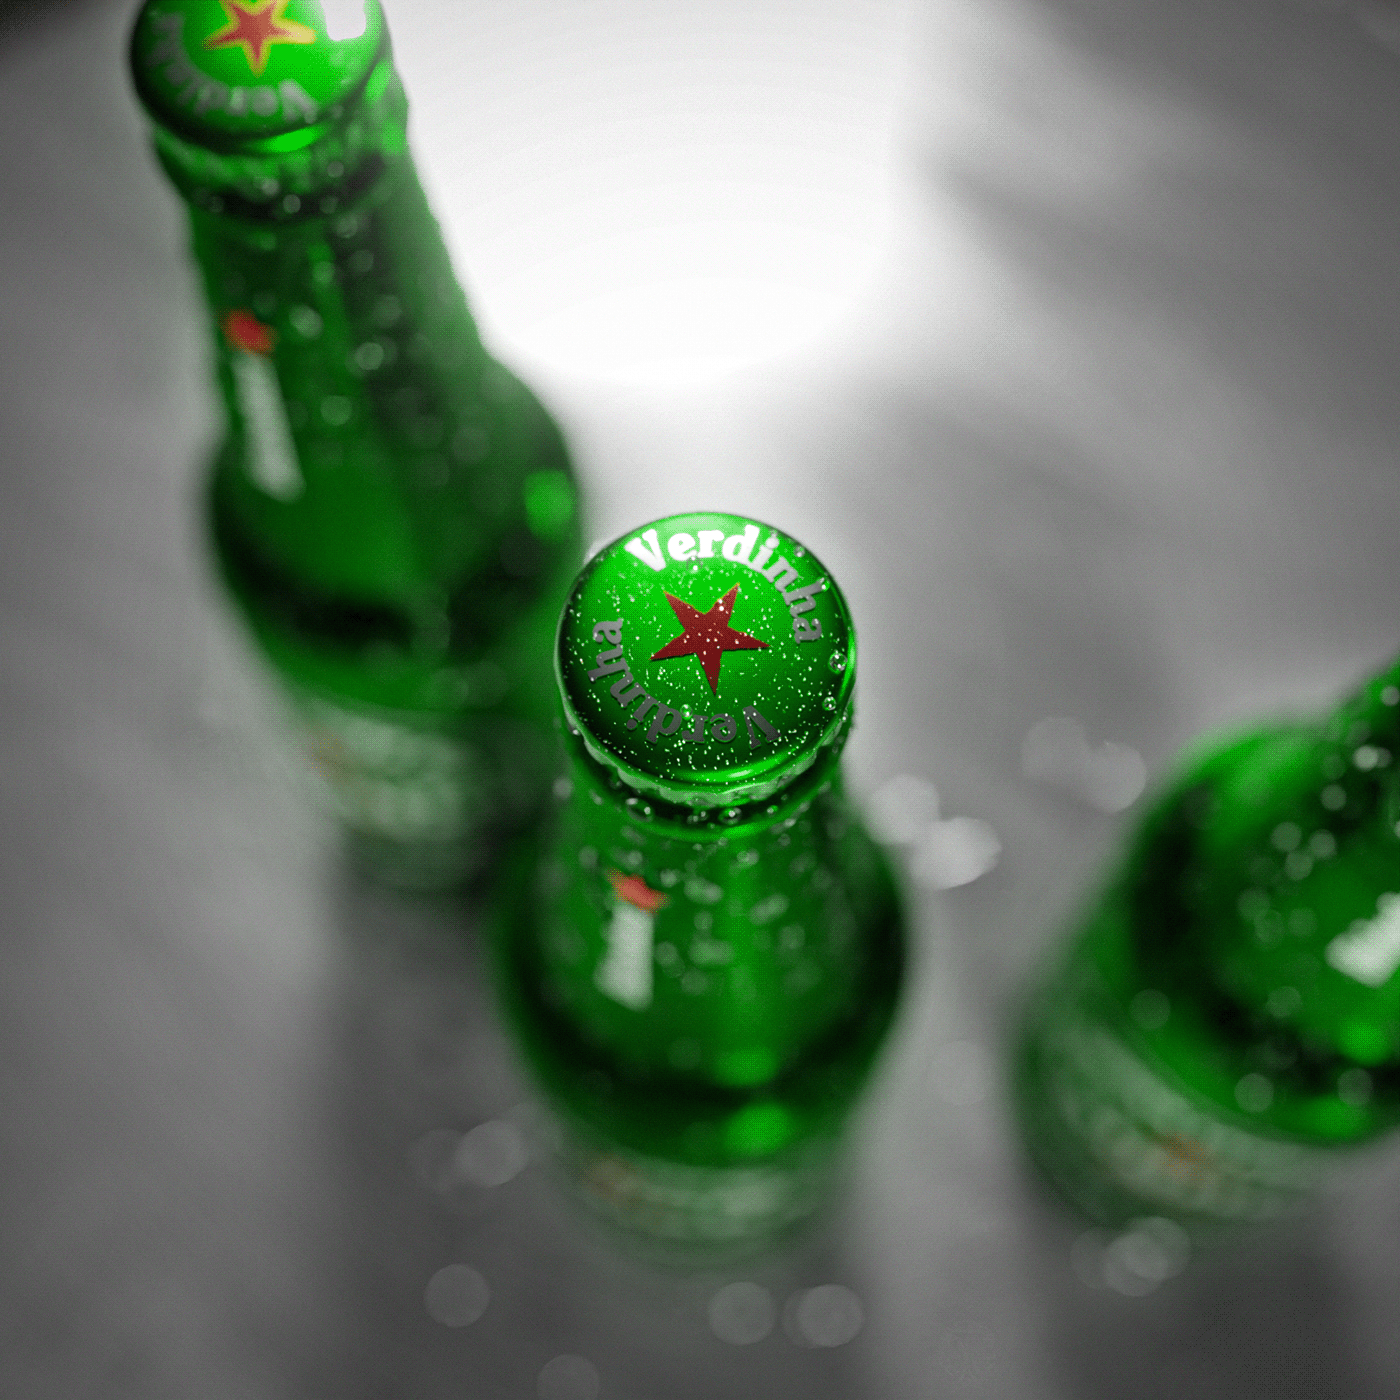 heineken beer Packshot Render 3D blender 3d modeling blender3d Packaging cervejaria